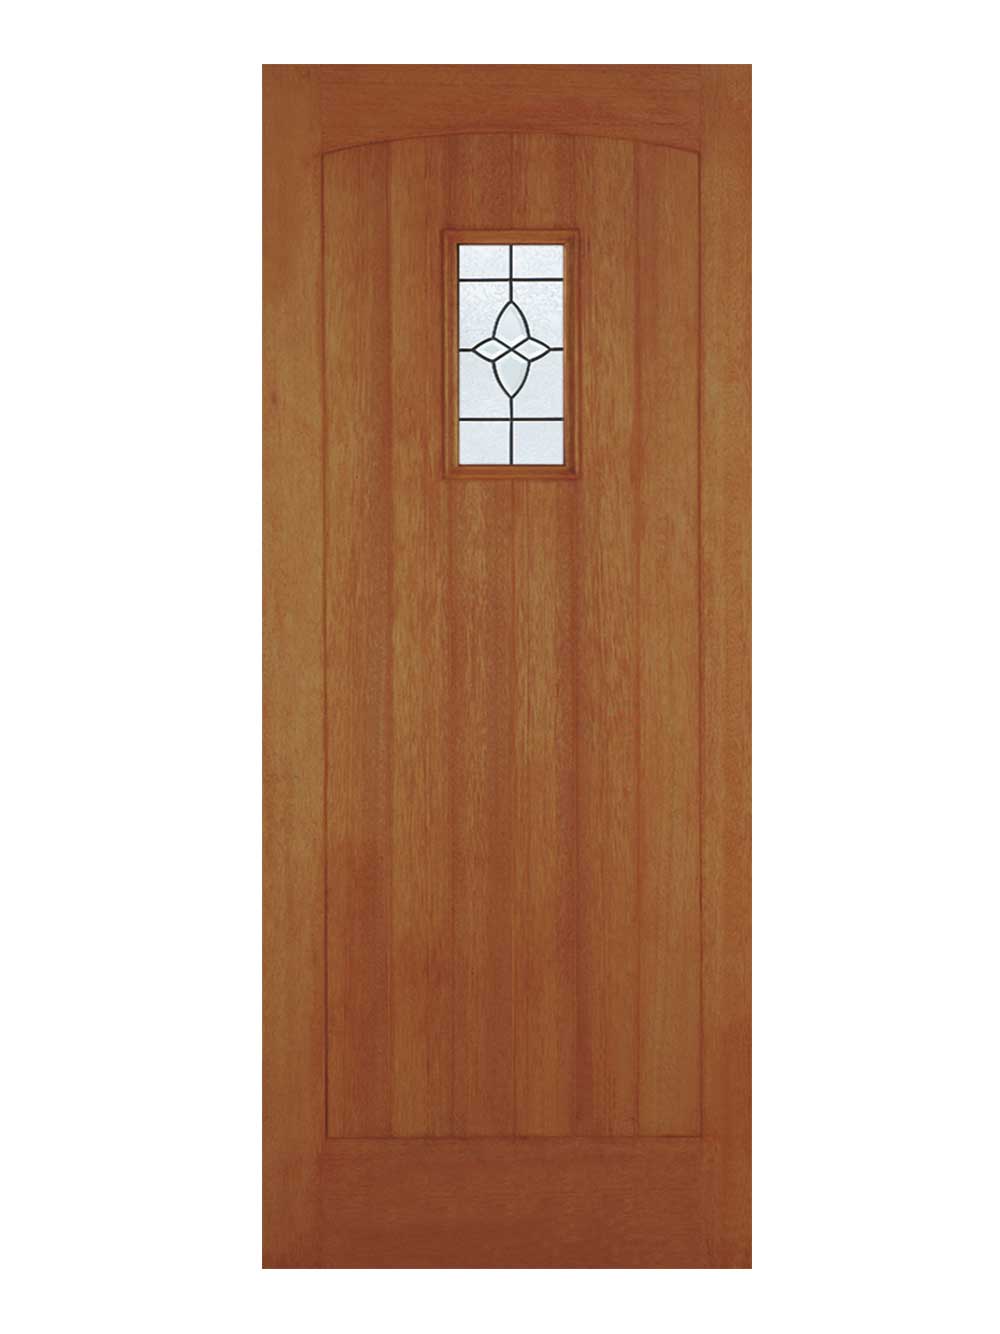 Hardwood External Doors